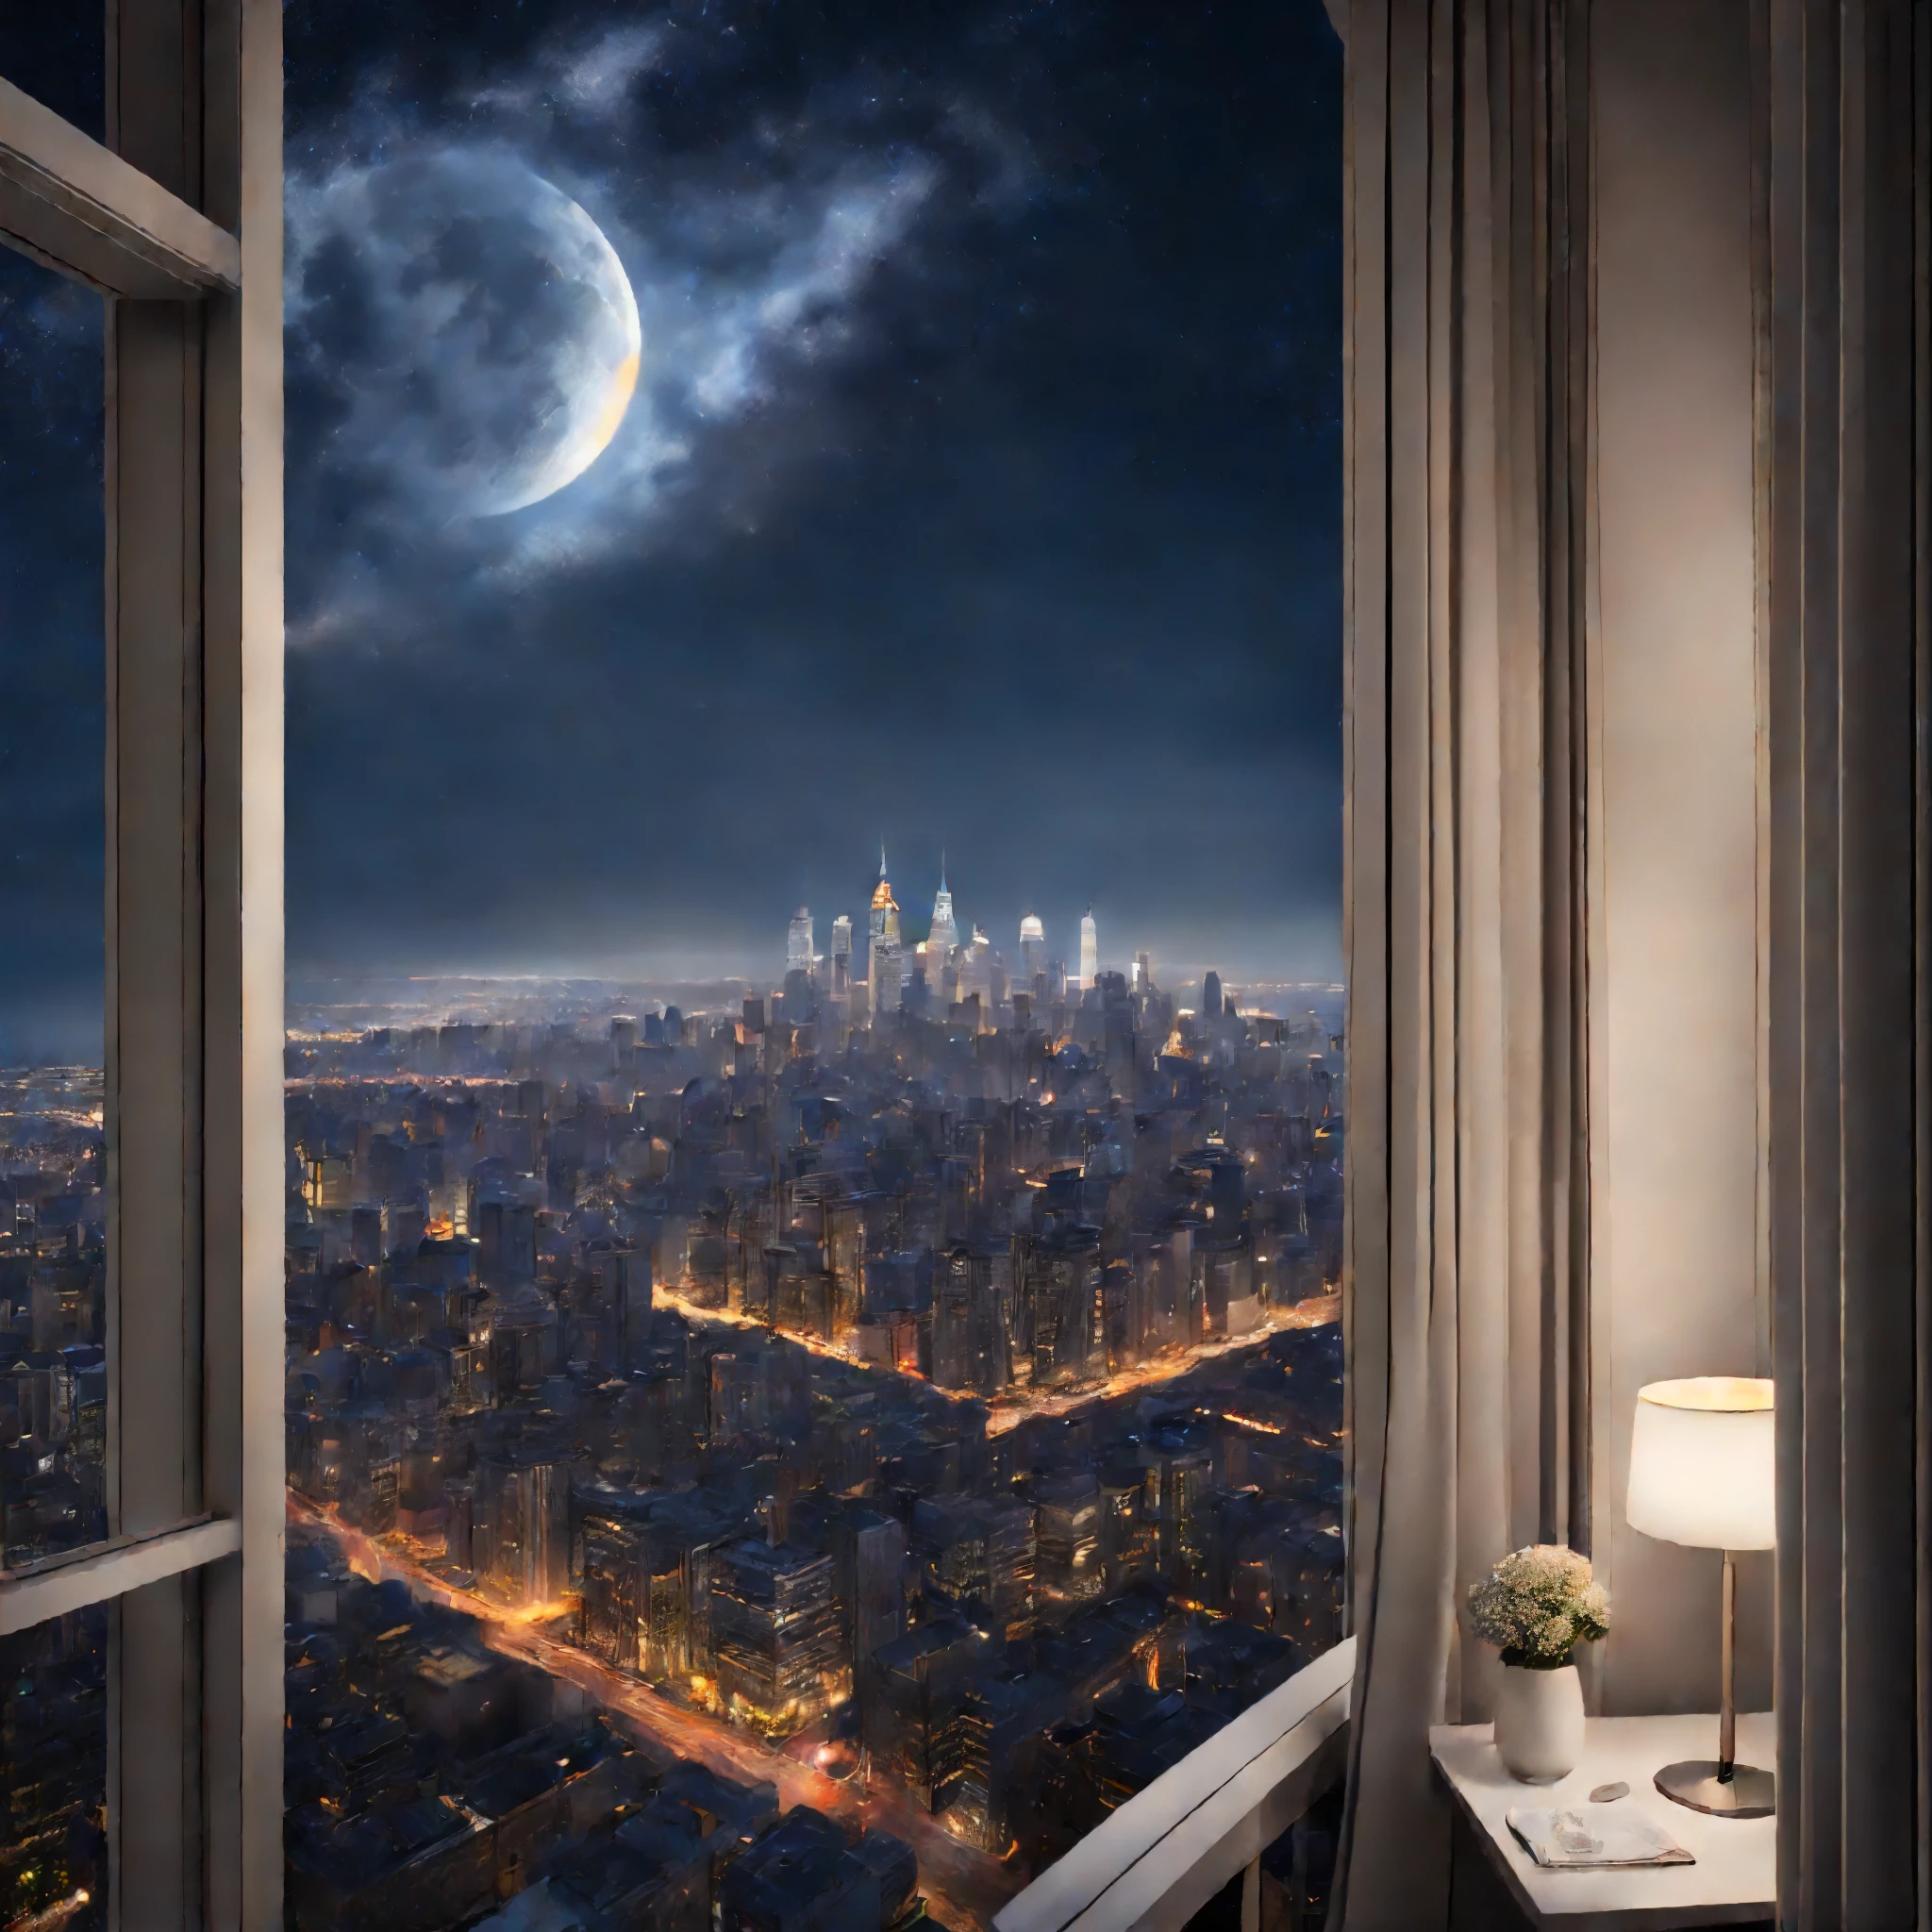 最好的圖像, 8K, 原始照片, 實際的, 詳細的, 精美的, 華麗而動態的描繪, the dazzling night view of the downtown area of ​​a big city seen from the window of a high-rise ap藝術ment, 苍白的月亮, 繁星闪烁的天空, 和幻想, 藝術